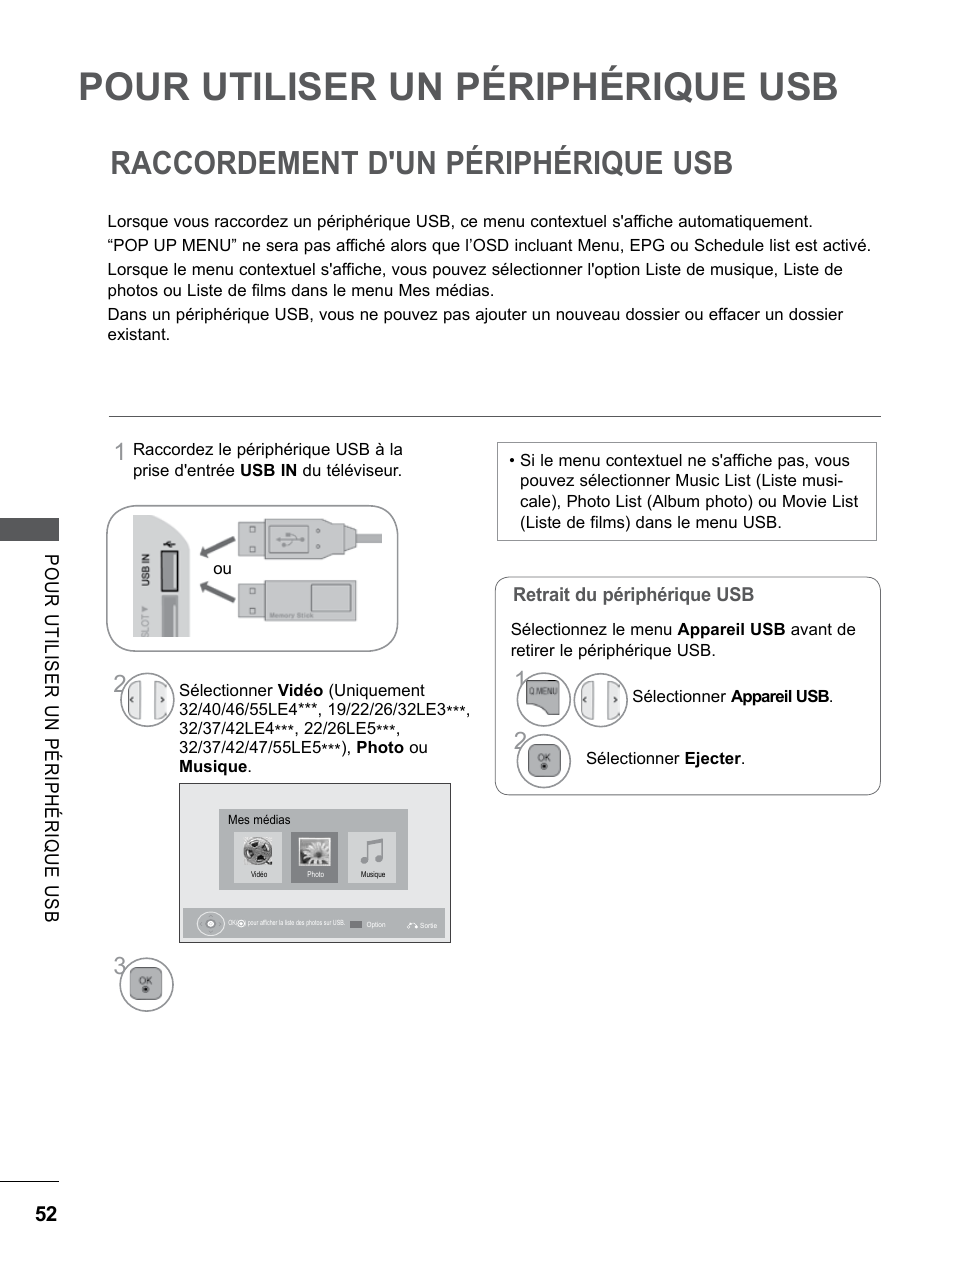 Pour utiliser un périphérique usb, Raccordement d'un périphérique usb, Pour utiliser un périphérique | LG 32LE5310 Manuel d'utilisation | Page 100 / 206